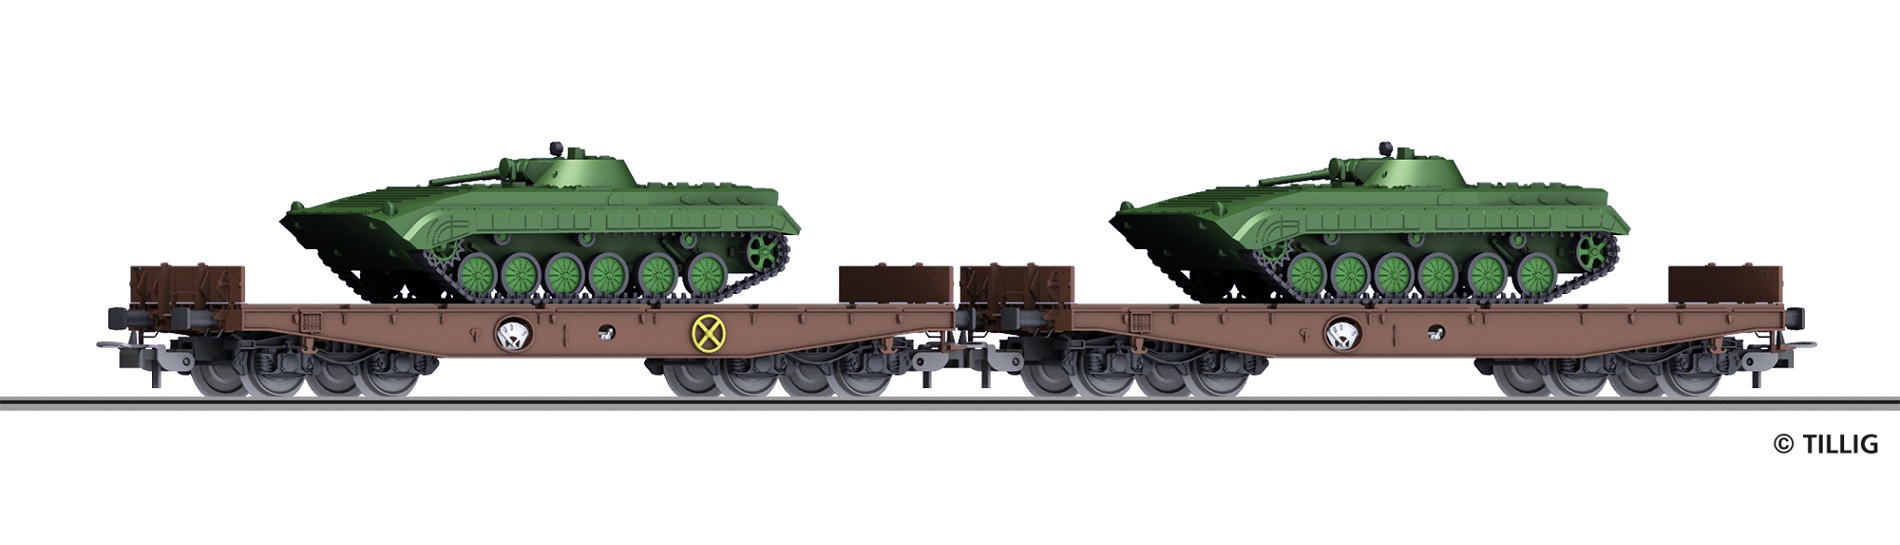 DR Schwerlastwagenset Ep.4 gattung Rmms 3960, mit Ladegut 2 Panzern BMP-1 "NVA", LüP = 288mm